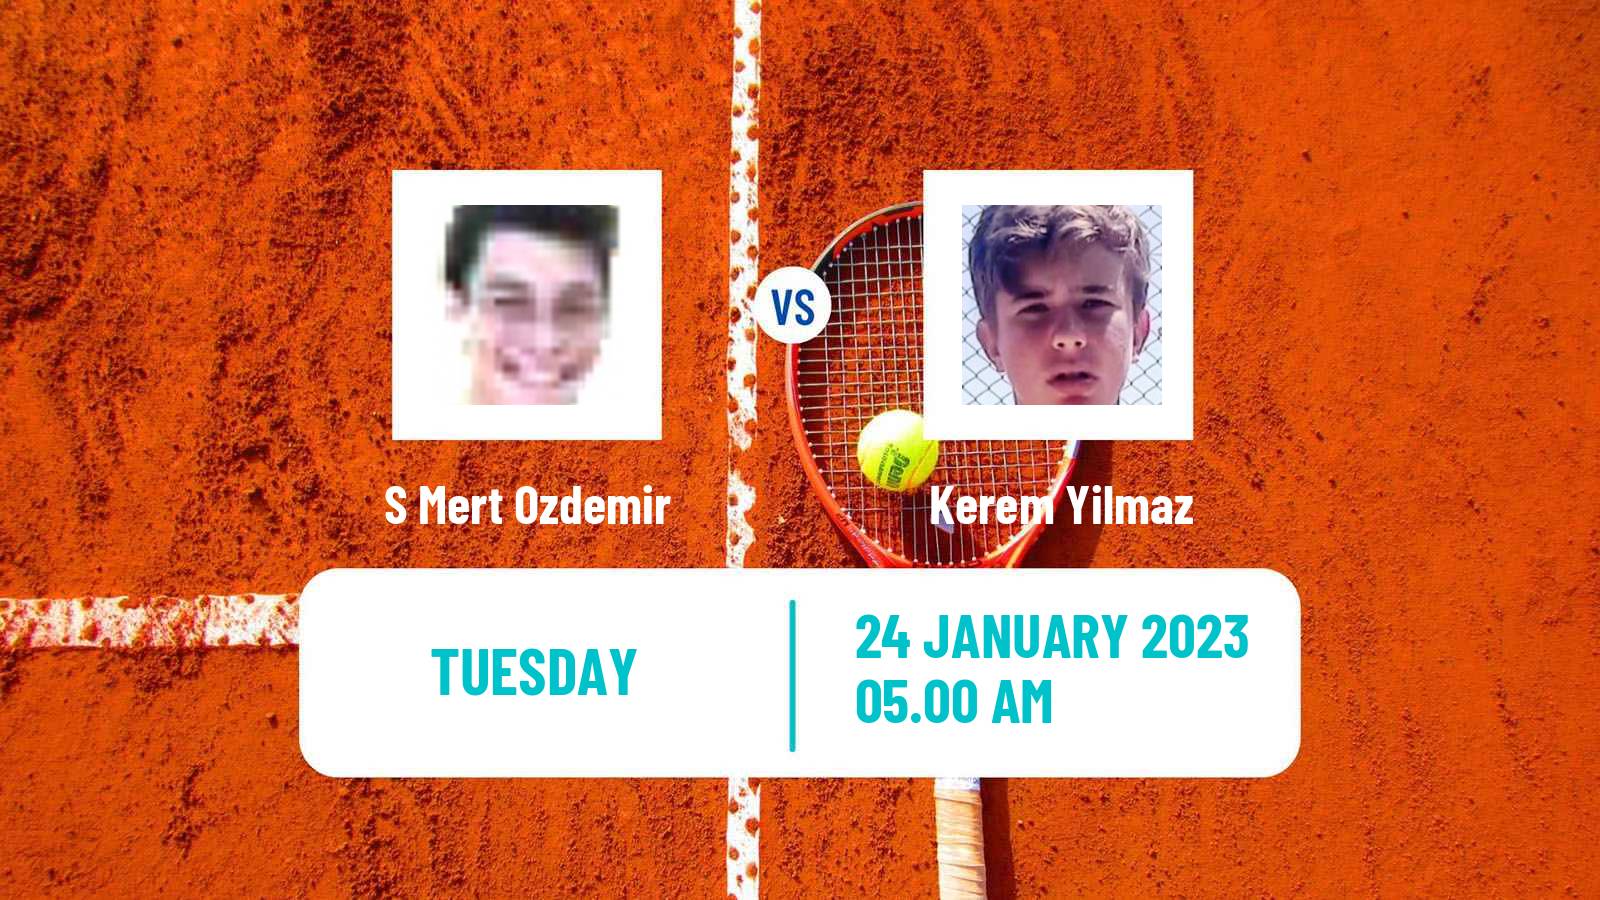 Tennis ITF Tournaments S Mert Ozdemir - Kerem Yilmaz